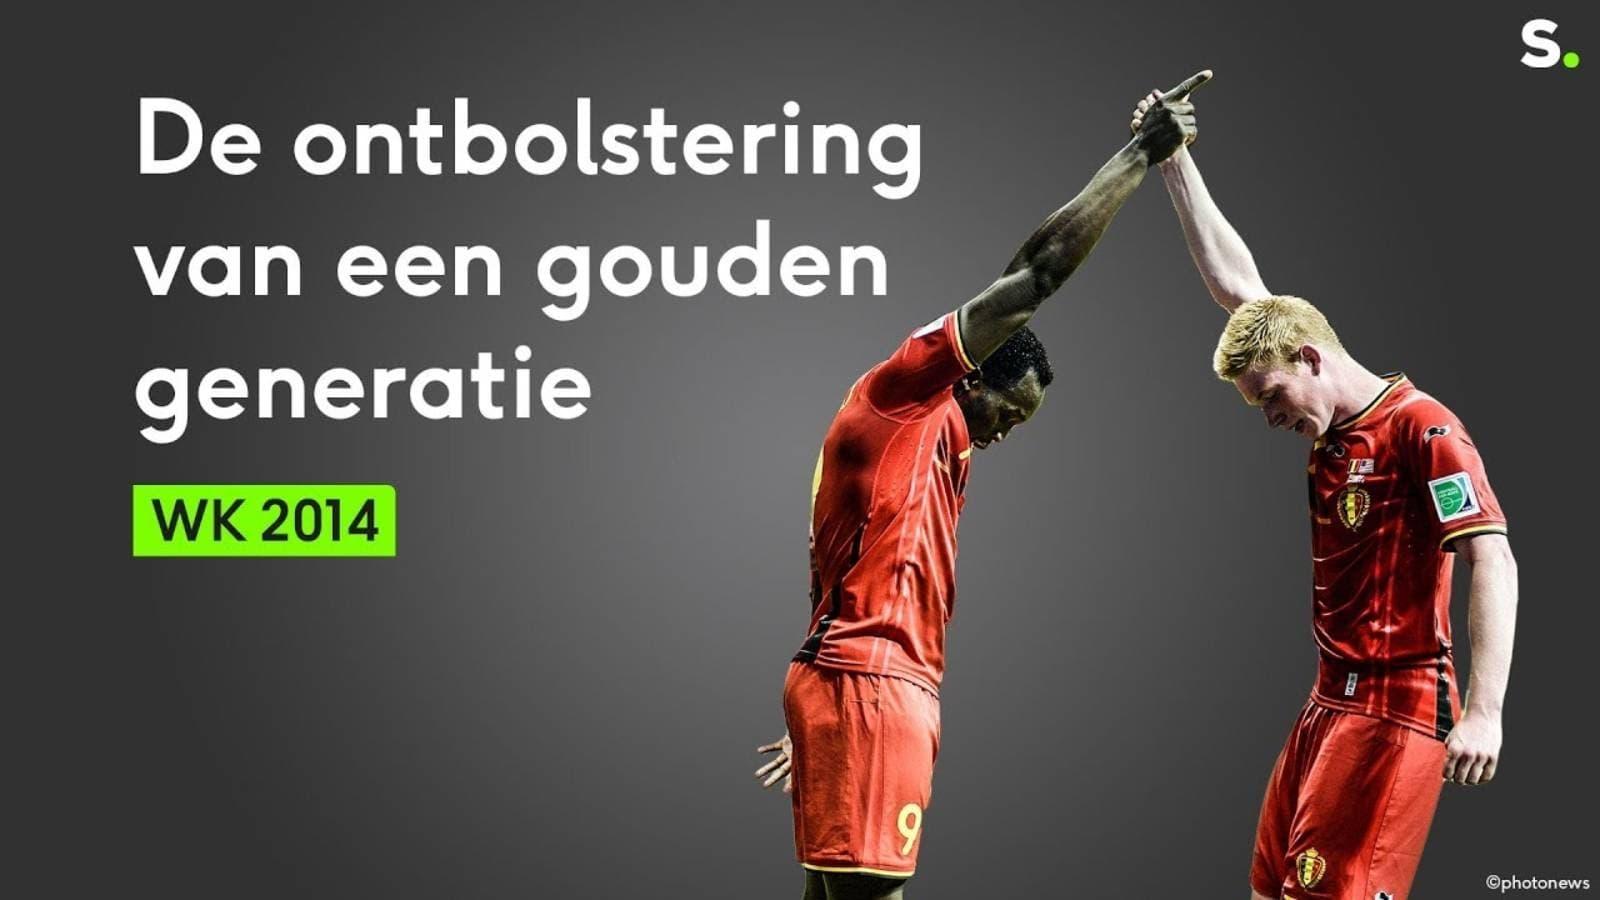 WK 2014: De ontbolstering van een gouden generatie bij de Rode Duivels backdrop